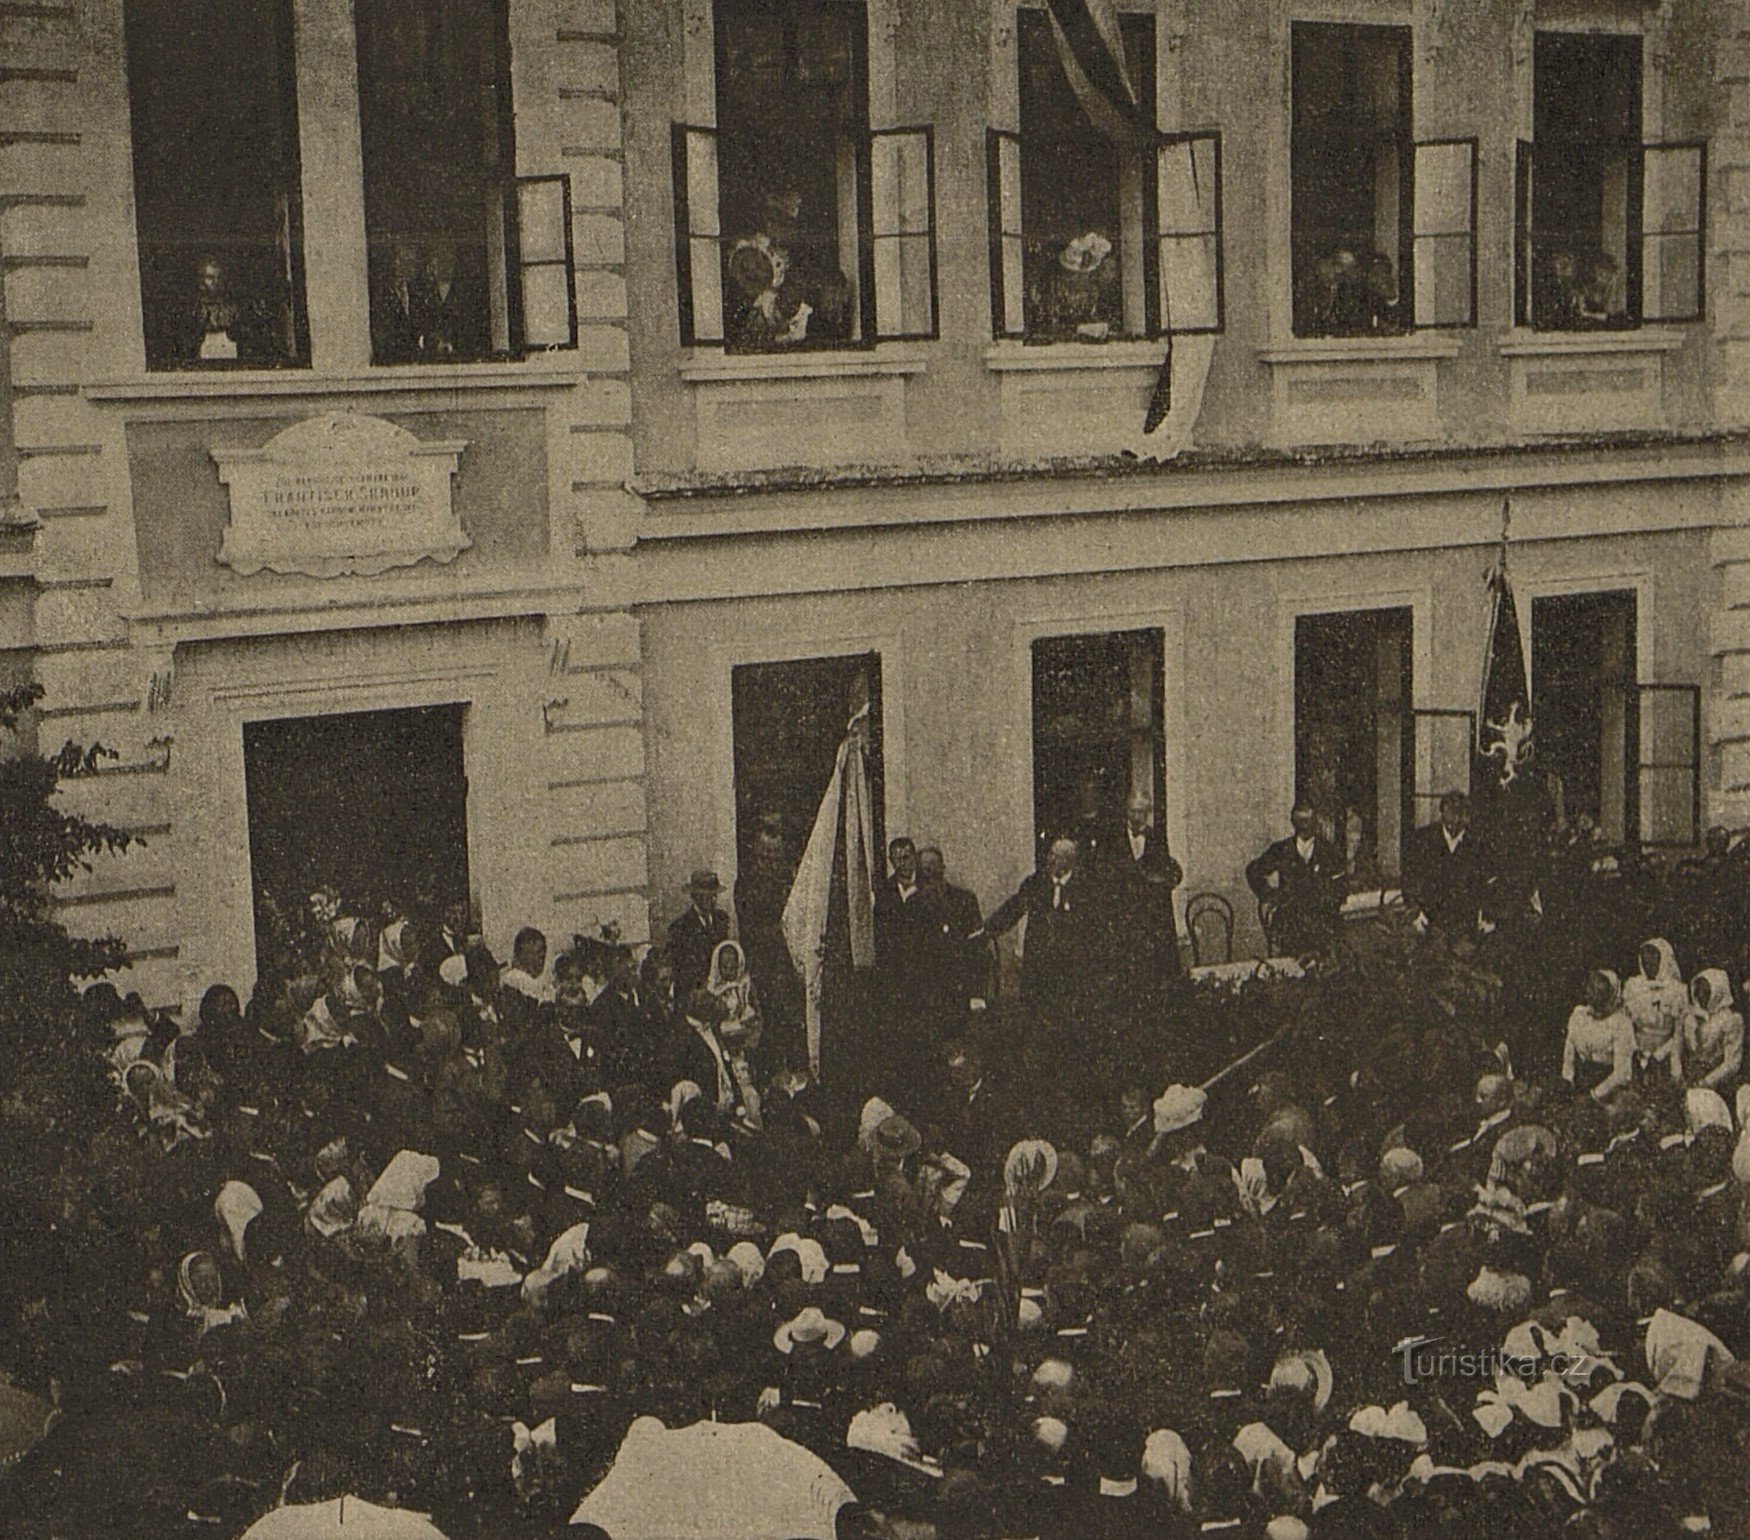 Ceremoniel afsløring af mindepladen for František Škroup i Osice i 1901